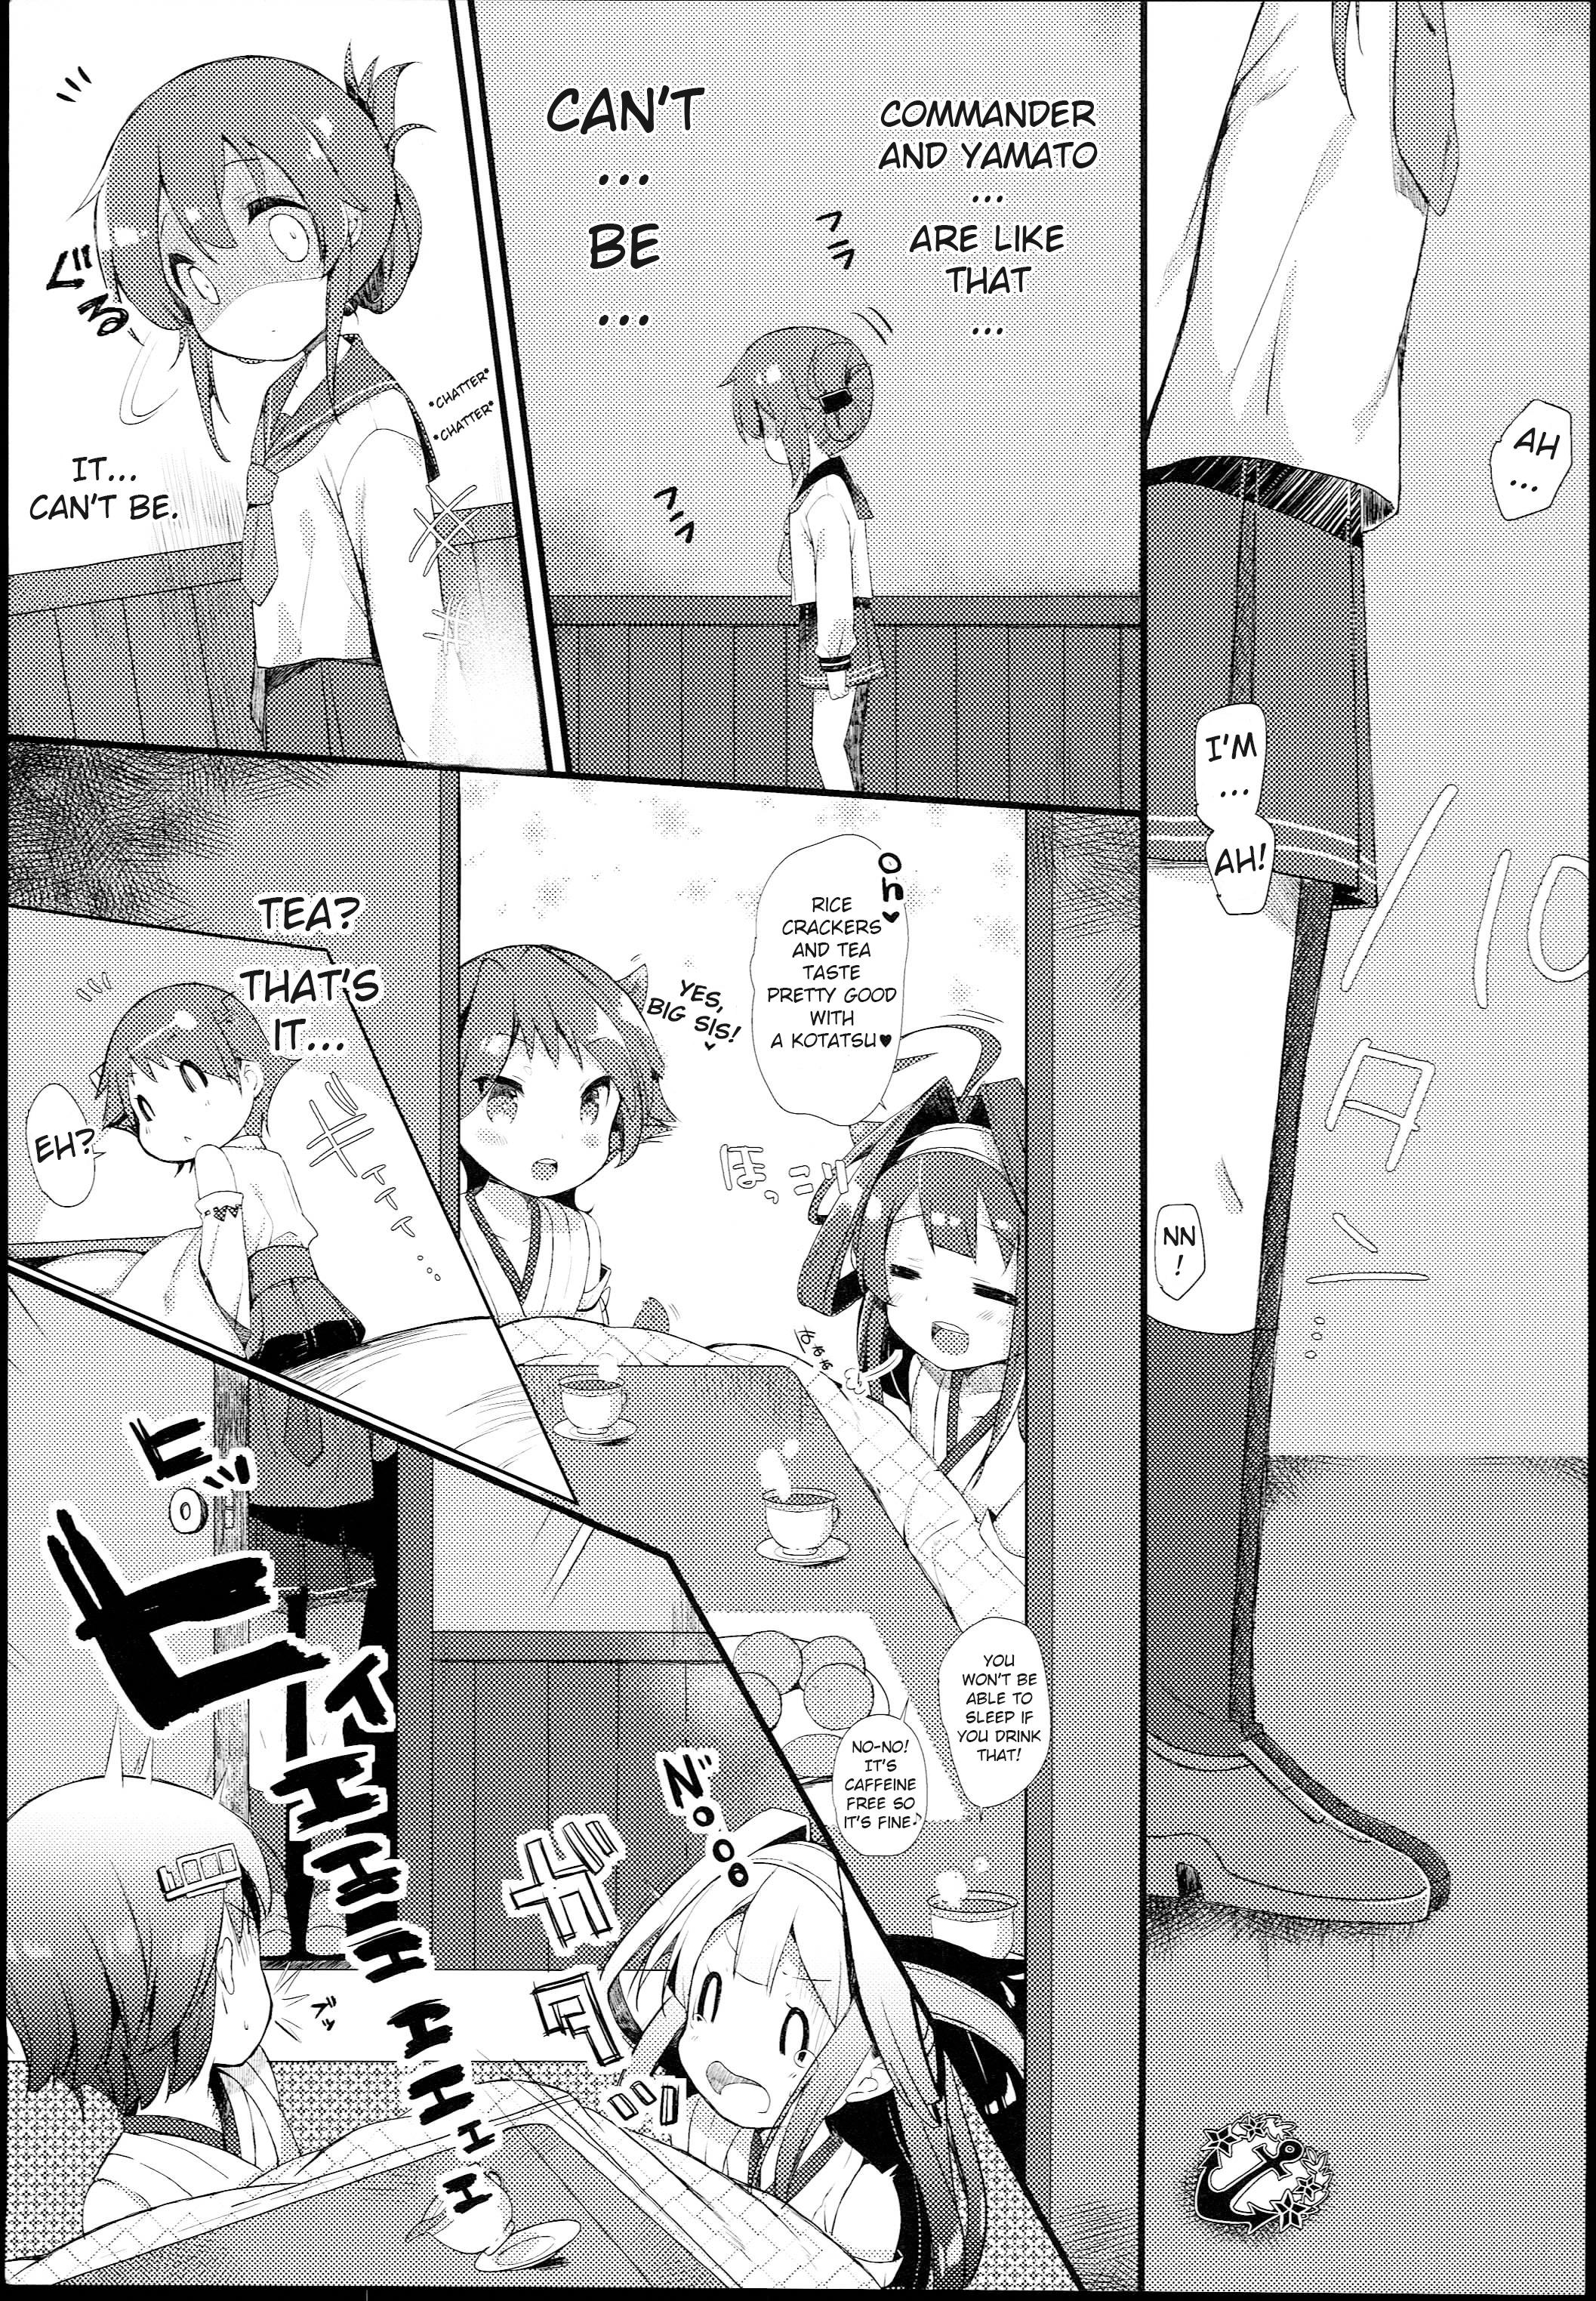 Massive Inazuma wa Zutto Zutto Zutto Shireikan no Hishokan nano desu - Kantai collection Gay Physicals - Page 11